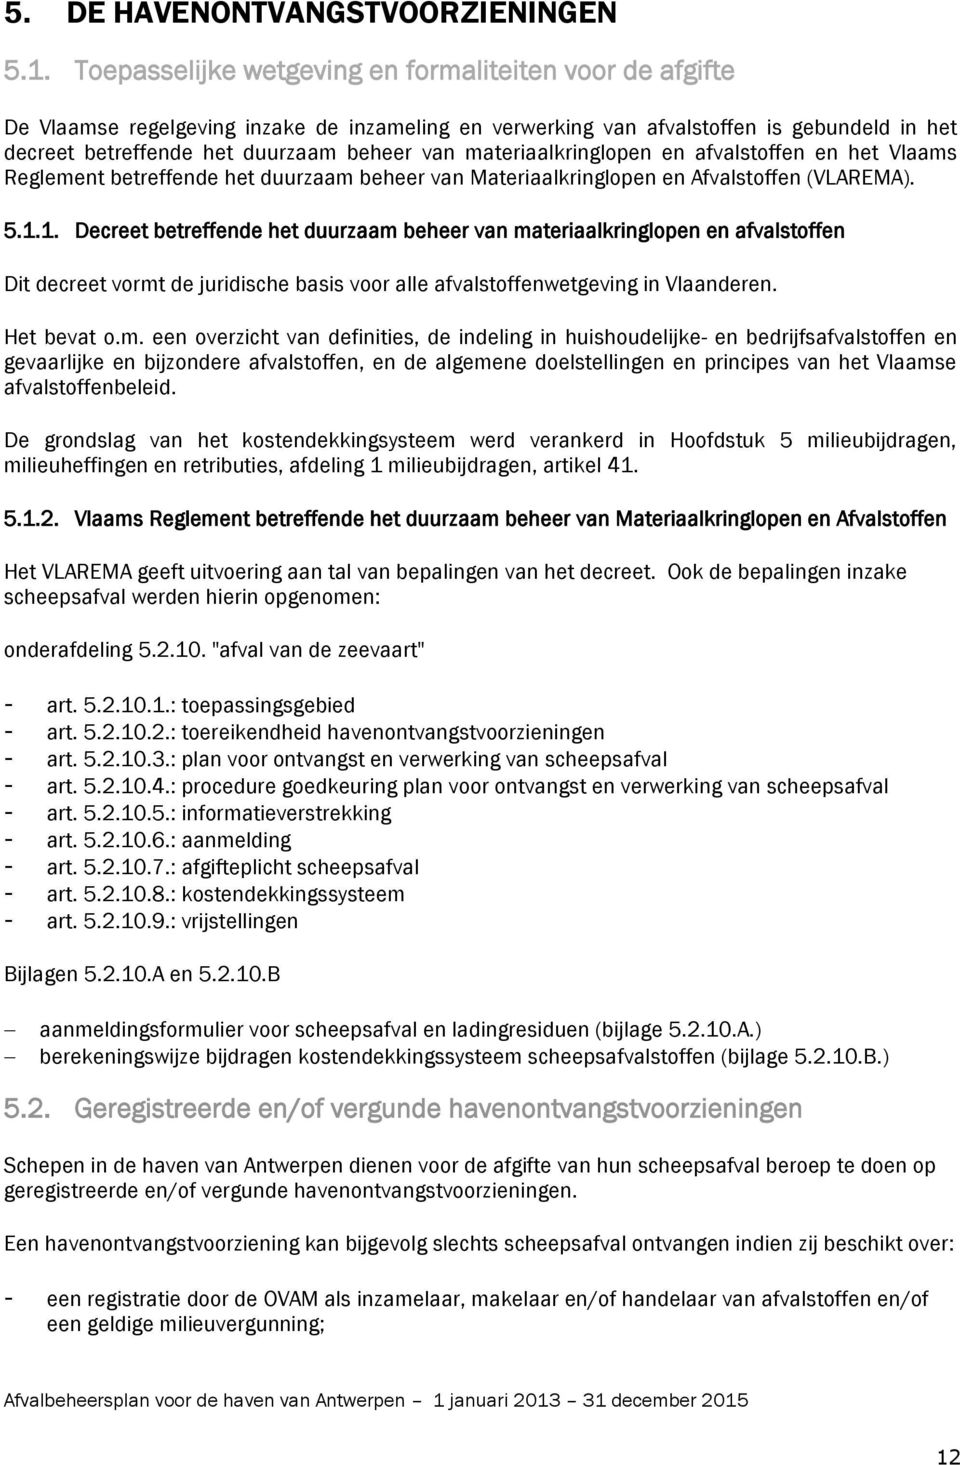 materiaalkringlopen en afvalstoffen en het Vlaams Reglement betreffende het duurzaam beheer van Materiaalkringlopen en Afvalstoffen (VLAREMA). 5.1.